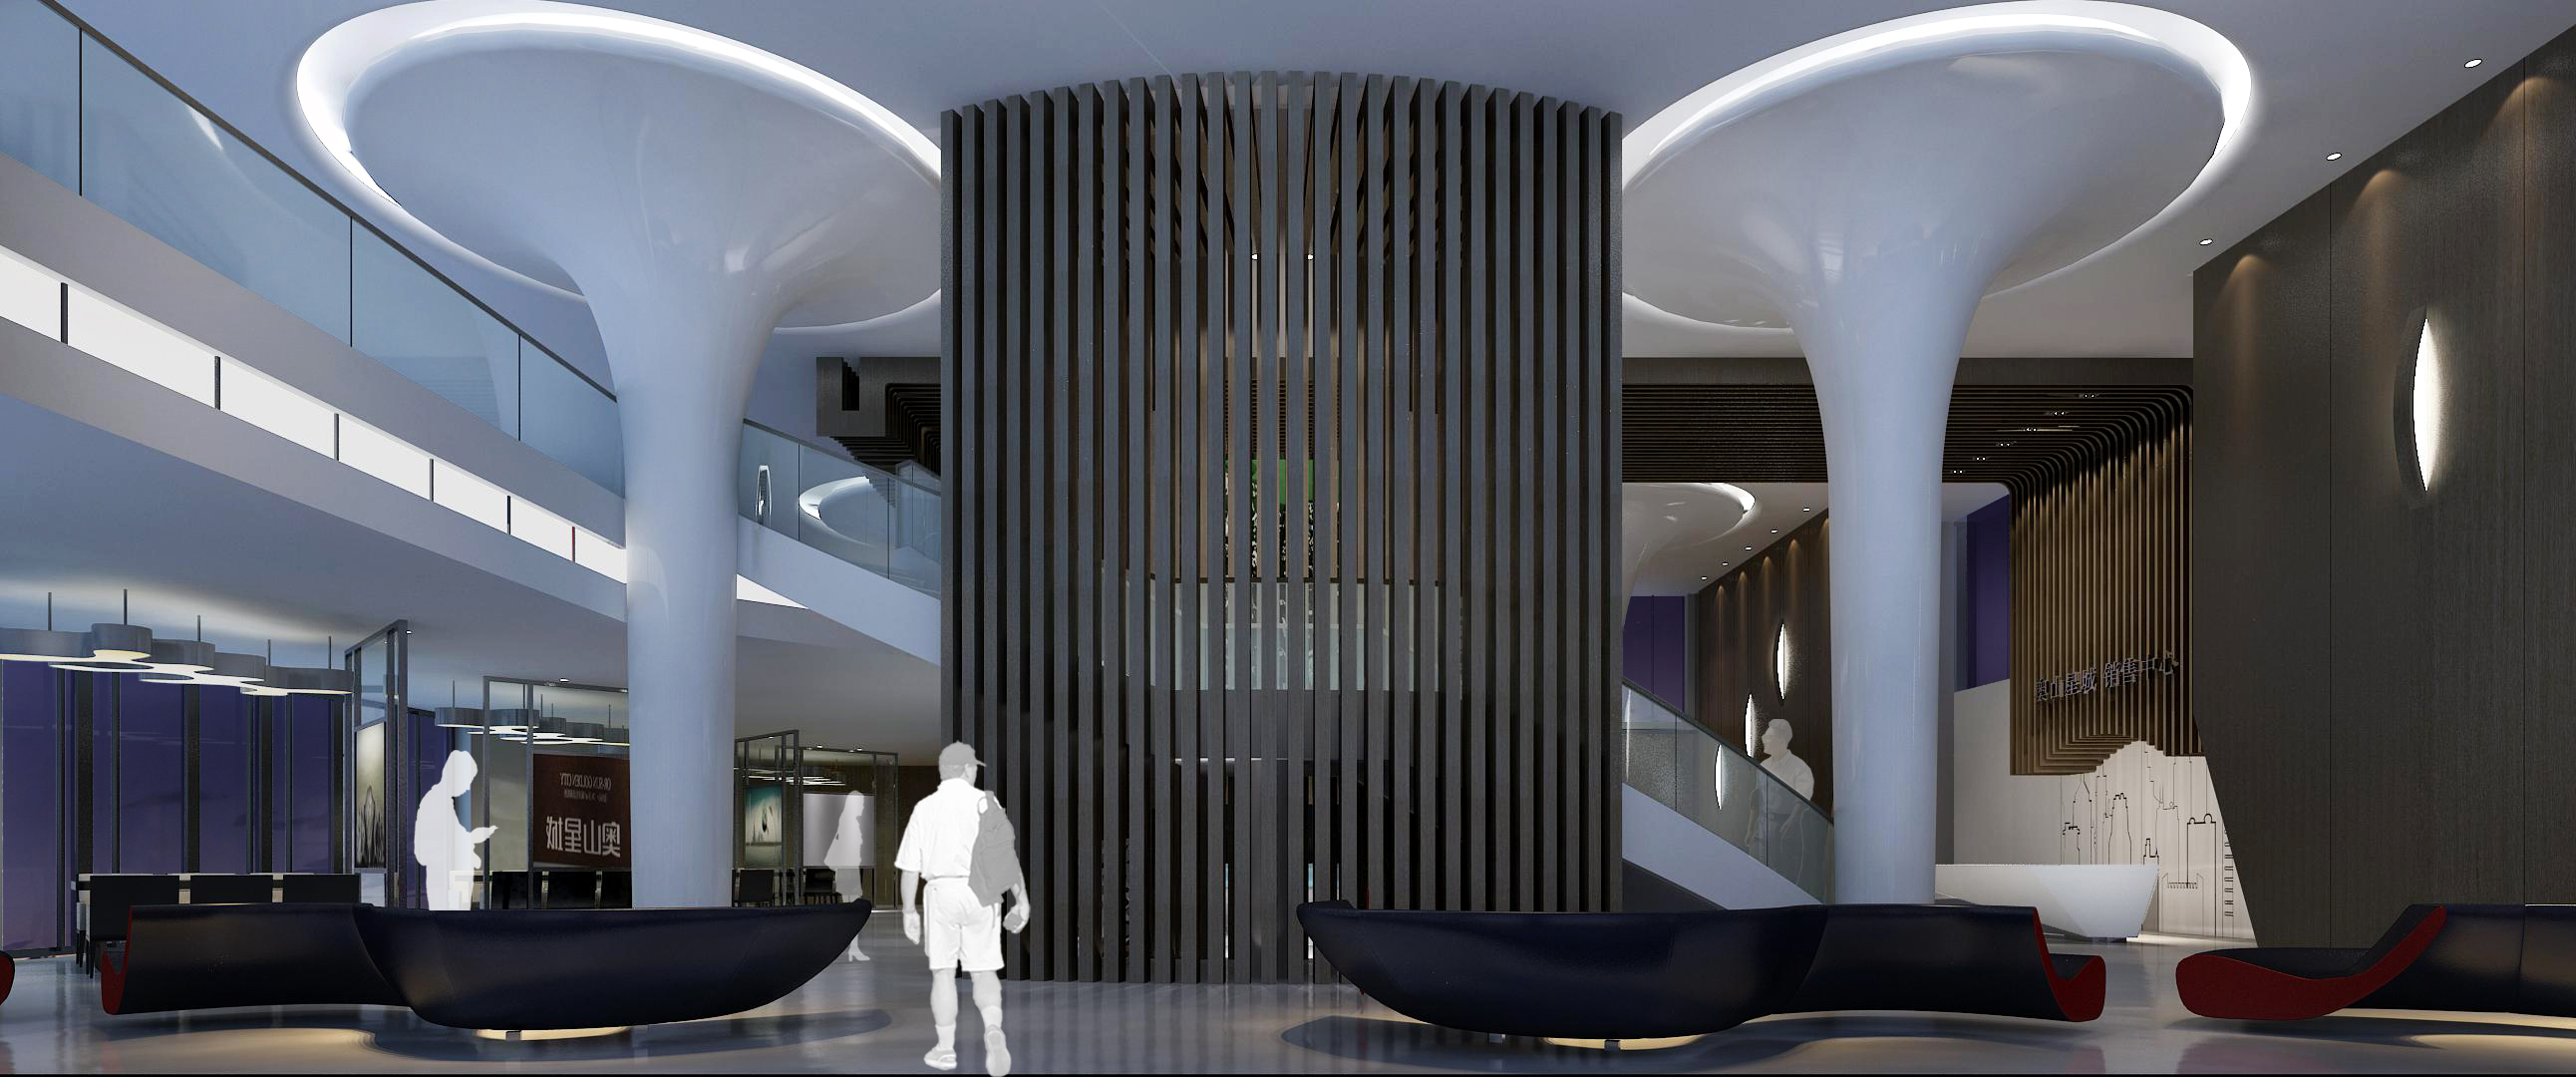 售楼处设计欧式中式现代高清售楼部效果图3D效果图-21